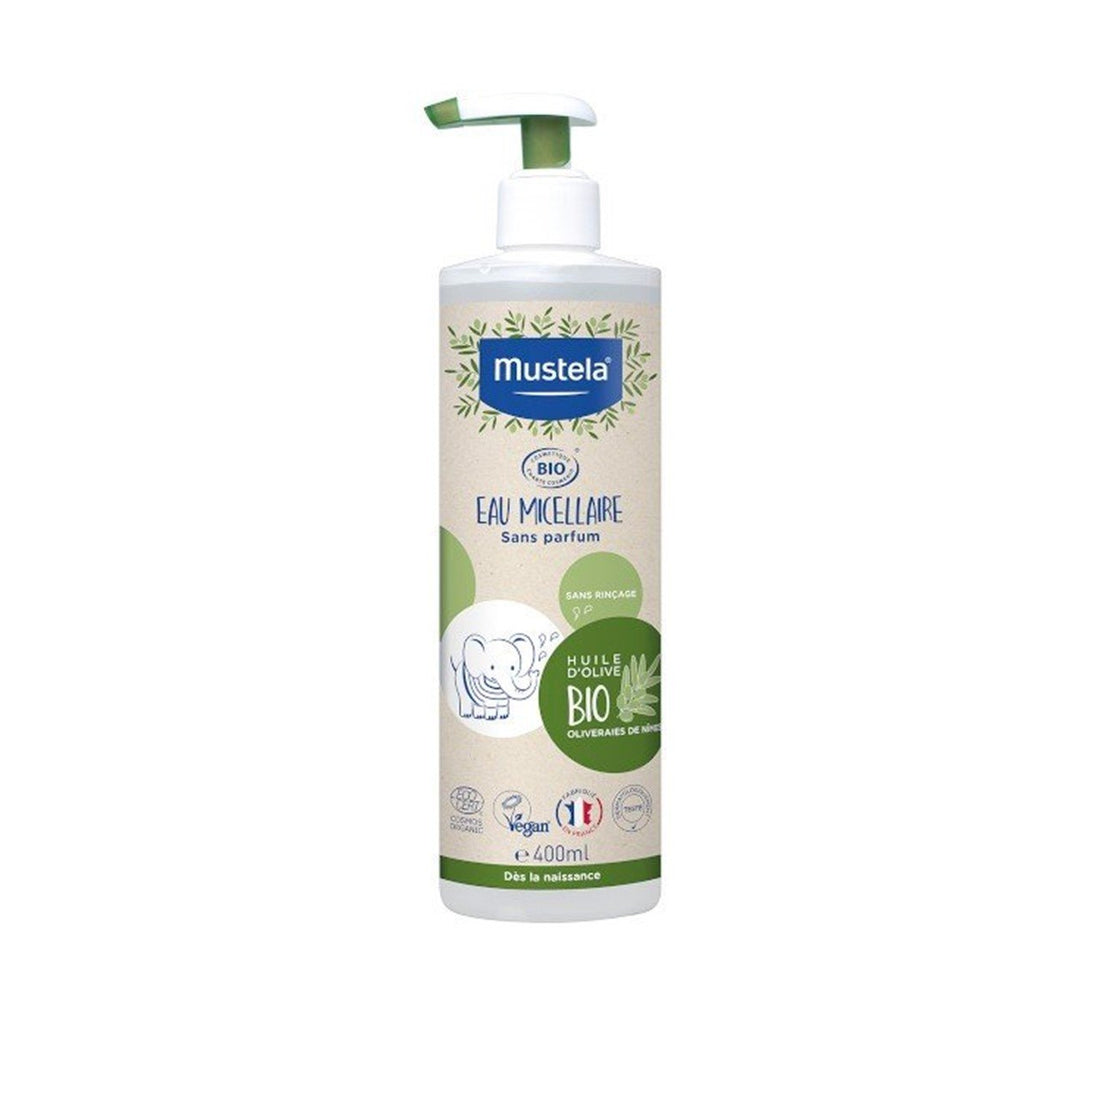 Mustela BIO Organic Micellar Water Fragrance-Free 400ml